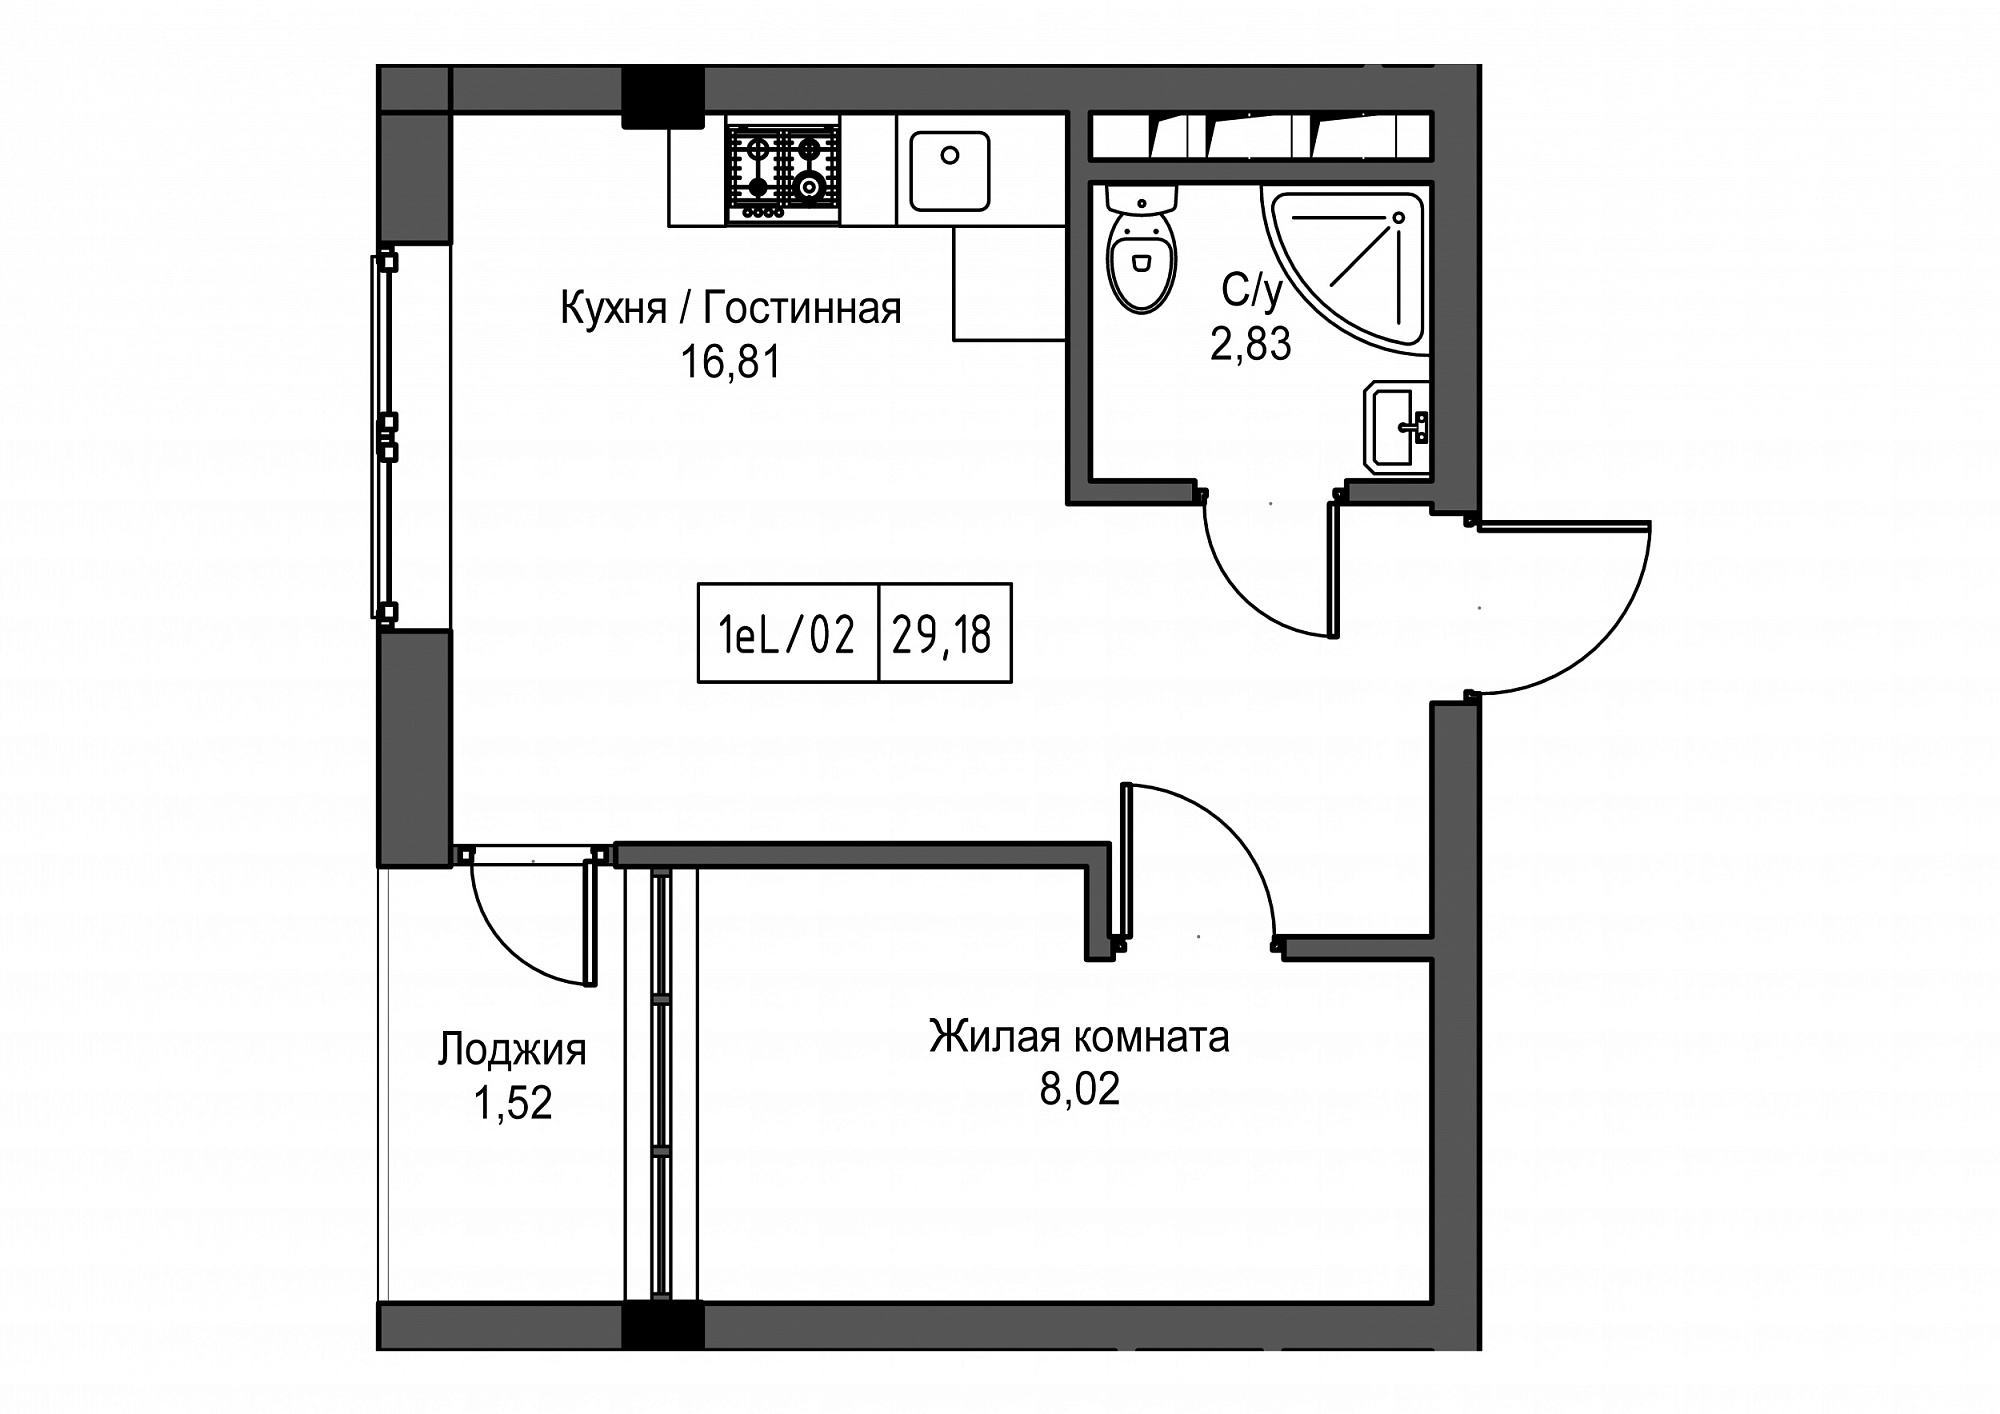 Планировка 1-к квартира площей 29.18м2, UM-002-02/0096.